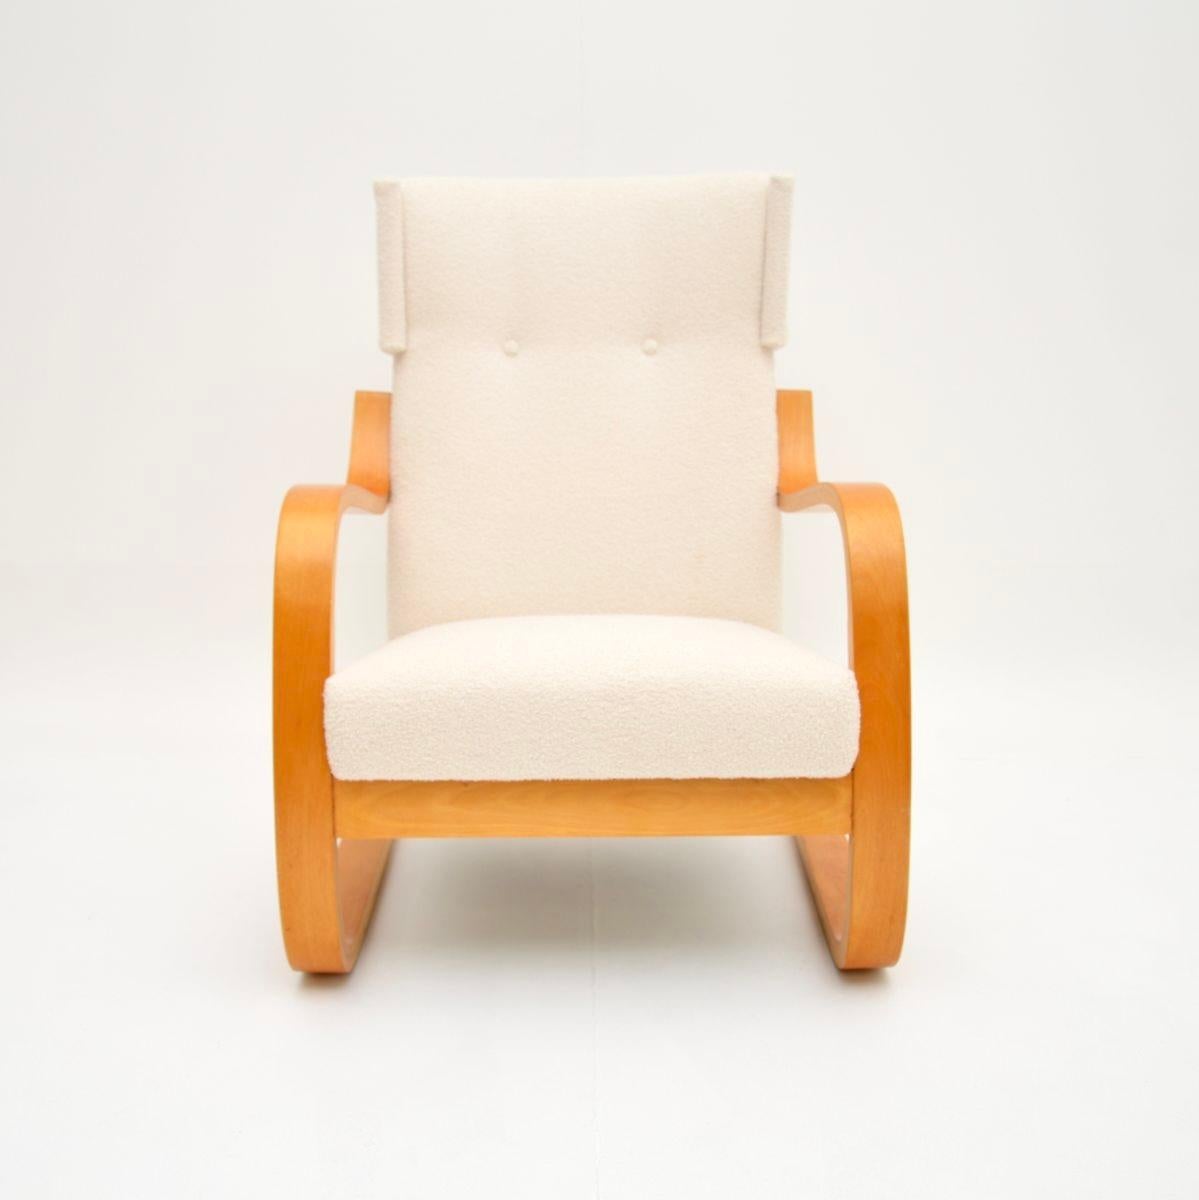 Un iconique et rare fauteuil vintage modèle 401 d'Alvar Aalto. Fabriqué en Finlande par Artek, il date des années 1970.

Il est d'une qualité exceptionnelle et extrêmement confortable. La zone d'assise offre un très bon soutien et le cadre en